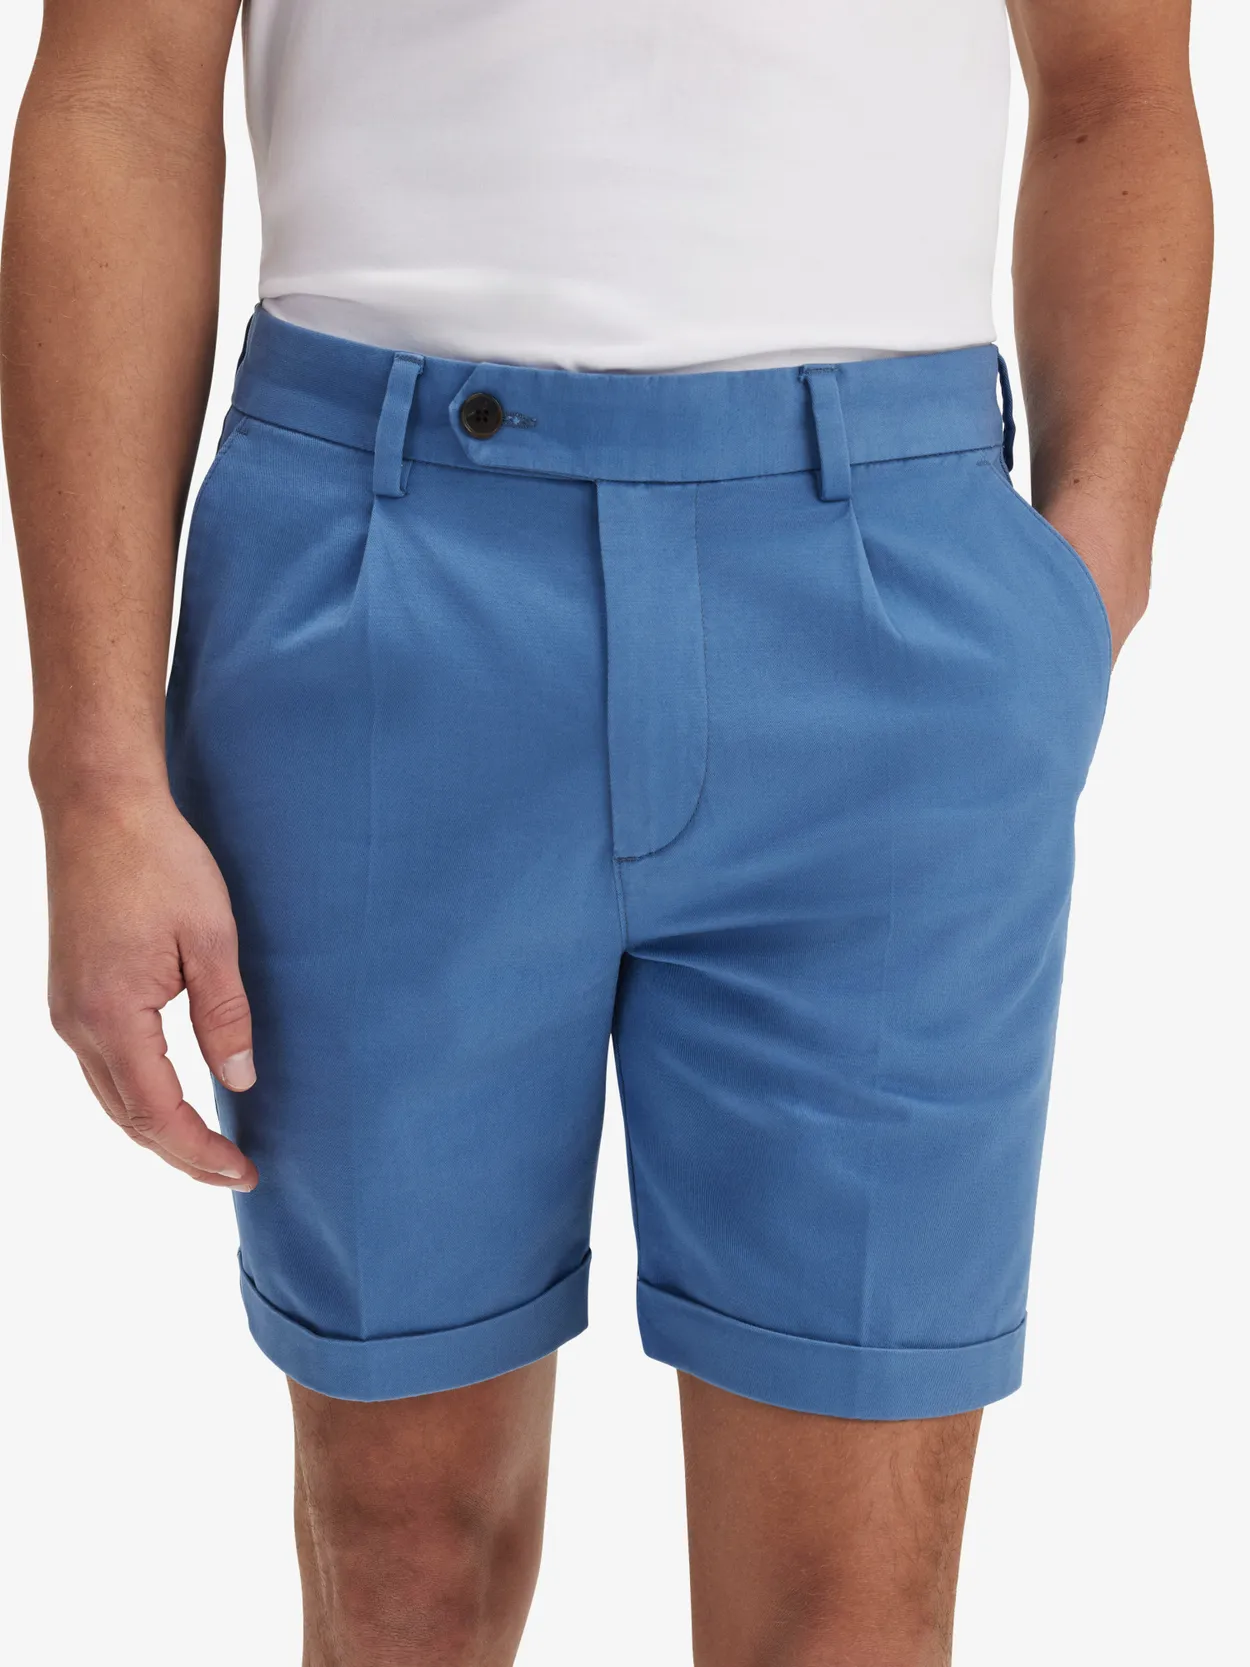 Blue Chinos Shorts